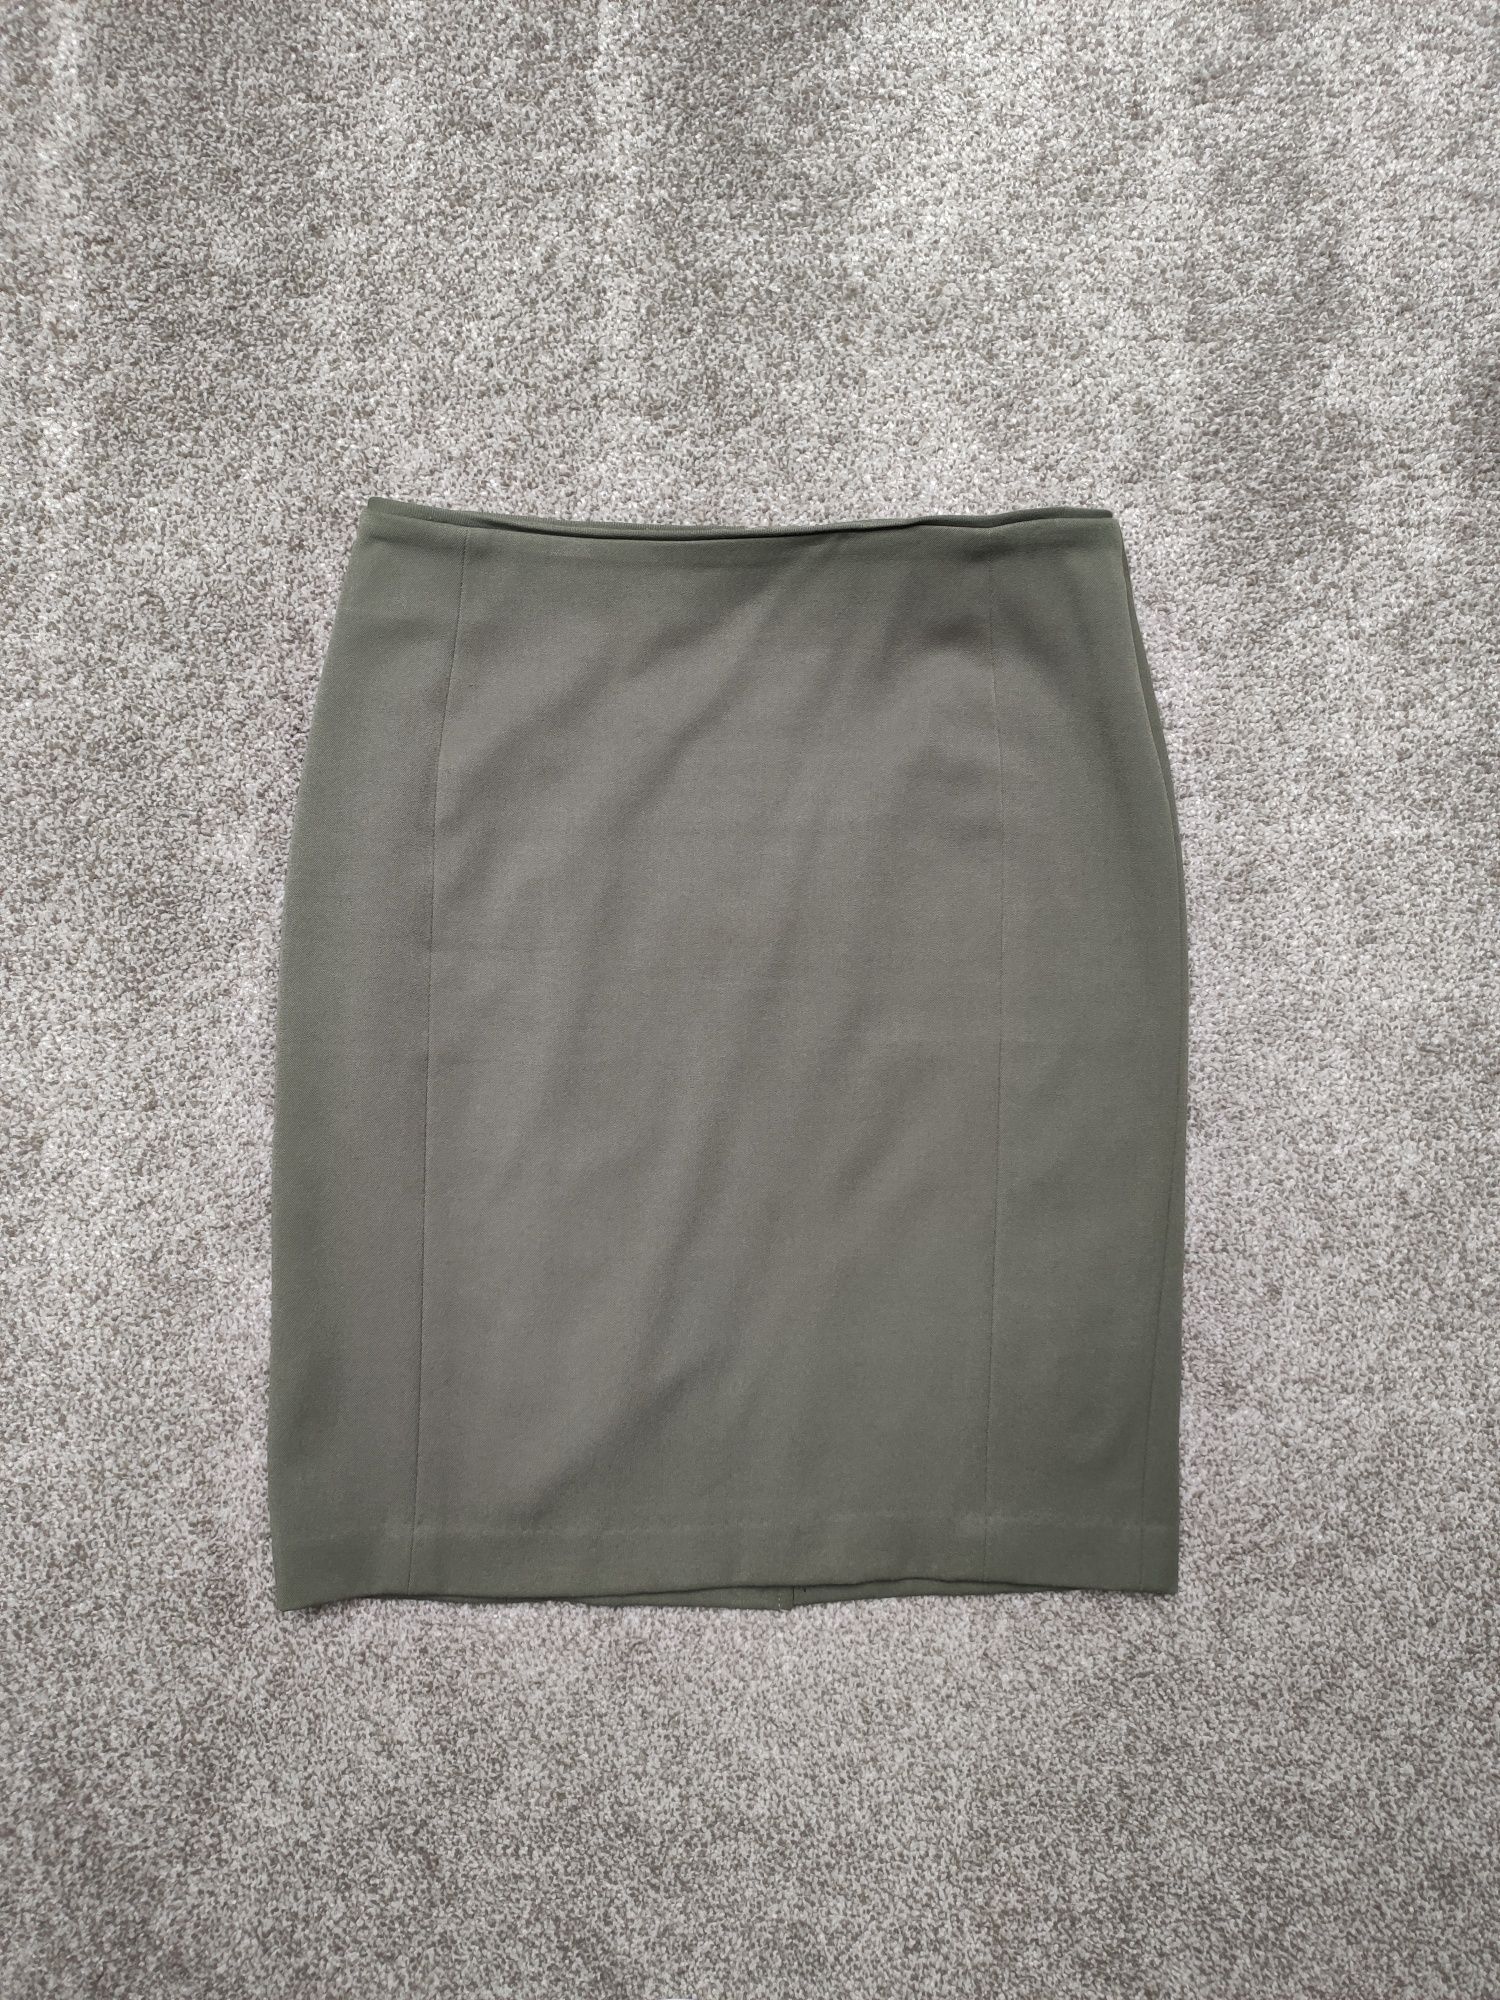 Spódnica ołówkowa miniówka rozmiar 40 L H&M khaki oliwkowa zielona